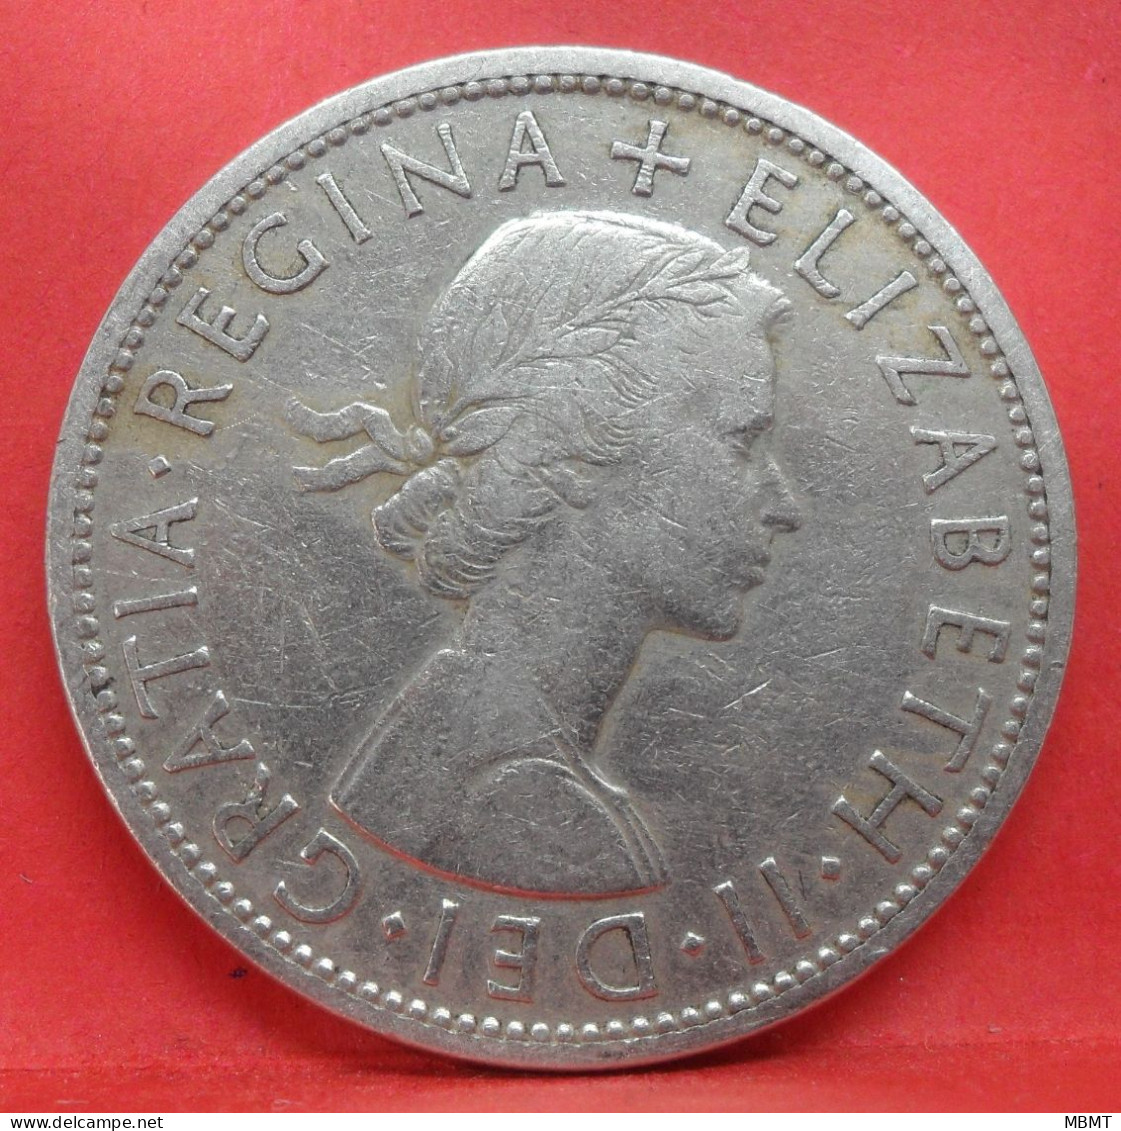 1/2 Crown 1957 - TB - Pièce Monnaie Grande-Bretagne - Article N°2894 - K. 1/2 Crown